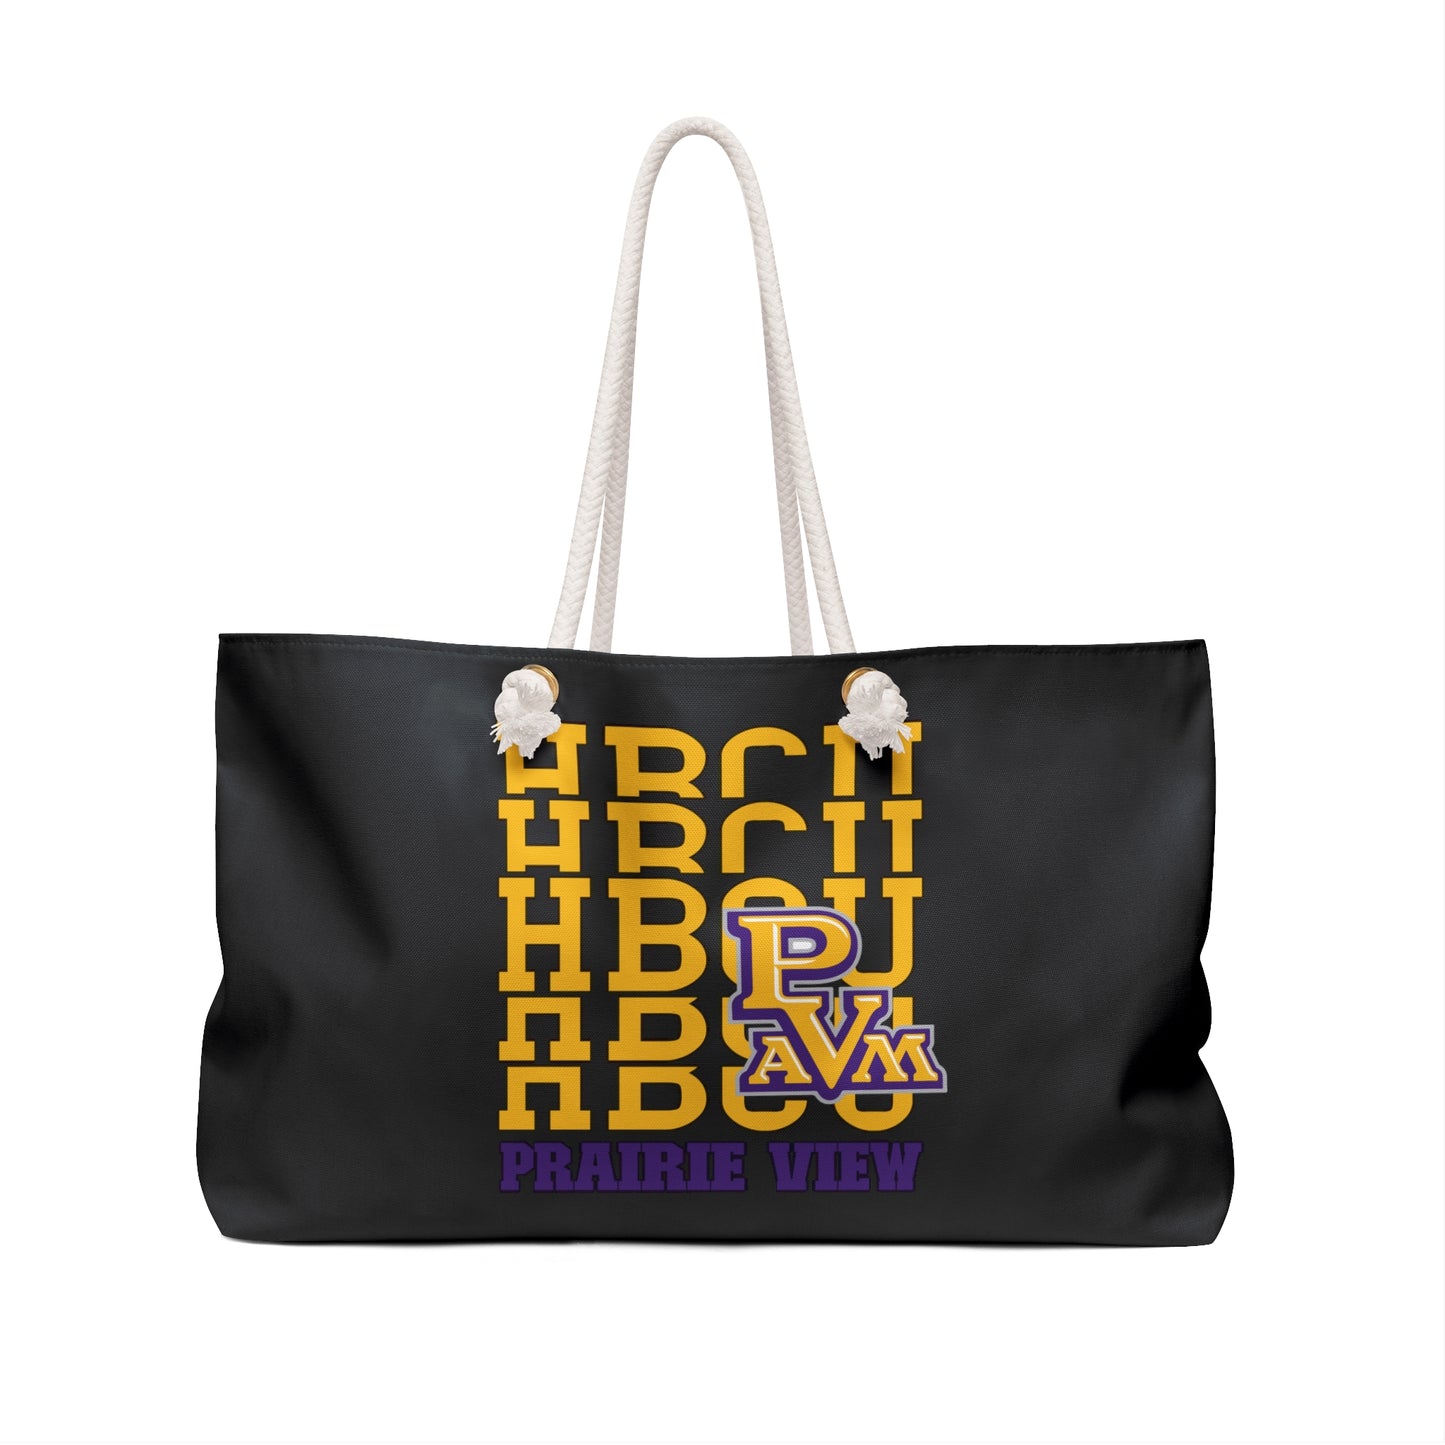 HBCU Love (Prairie View/ Weekender Bag)